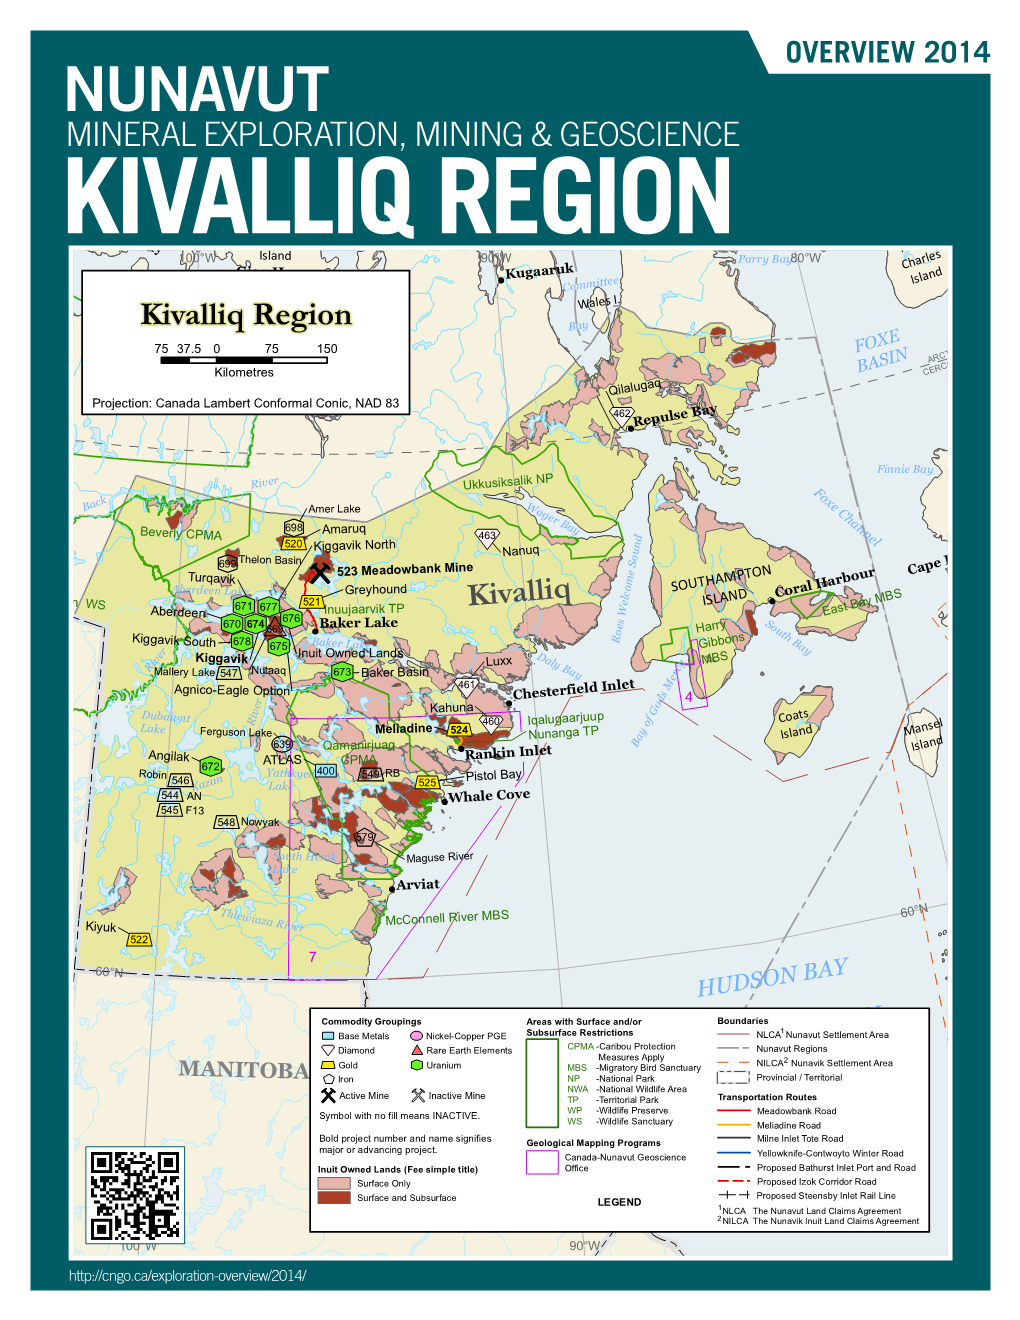 Kivalliq Region